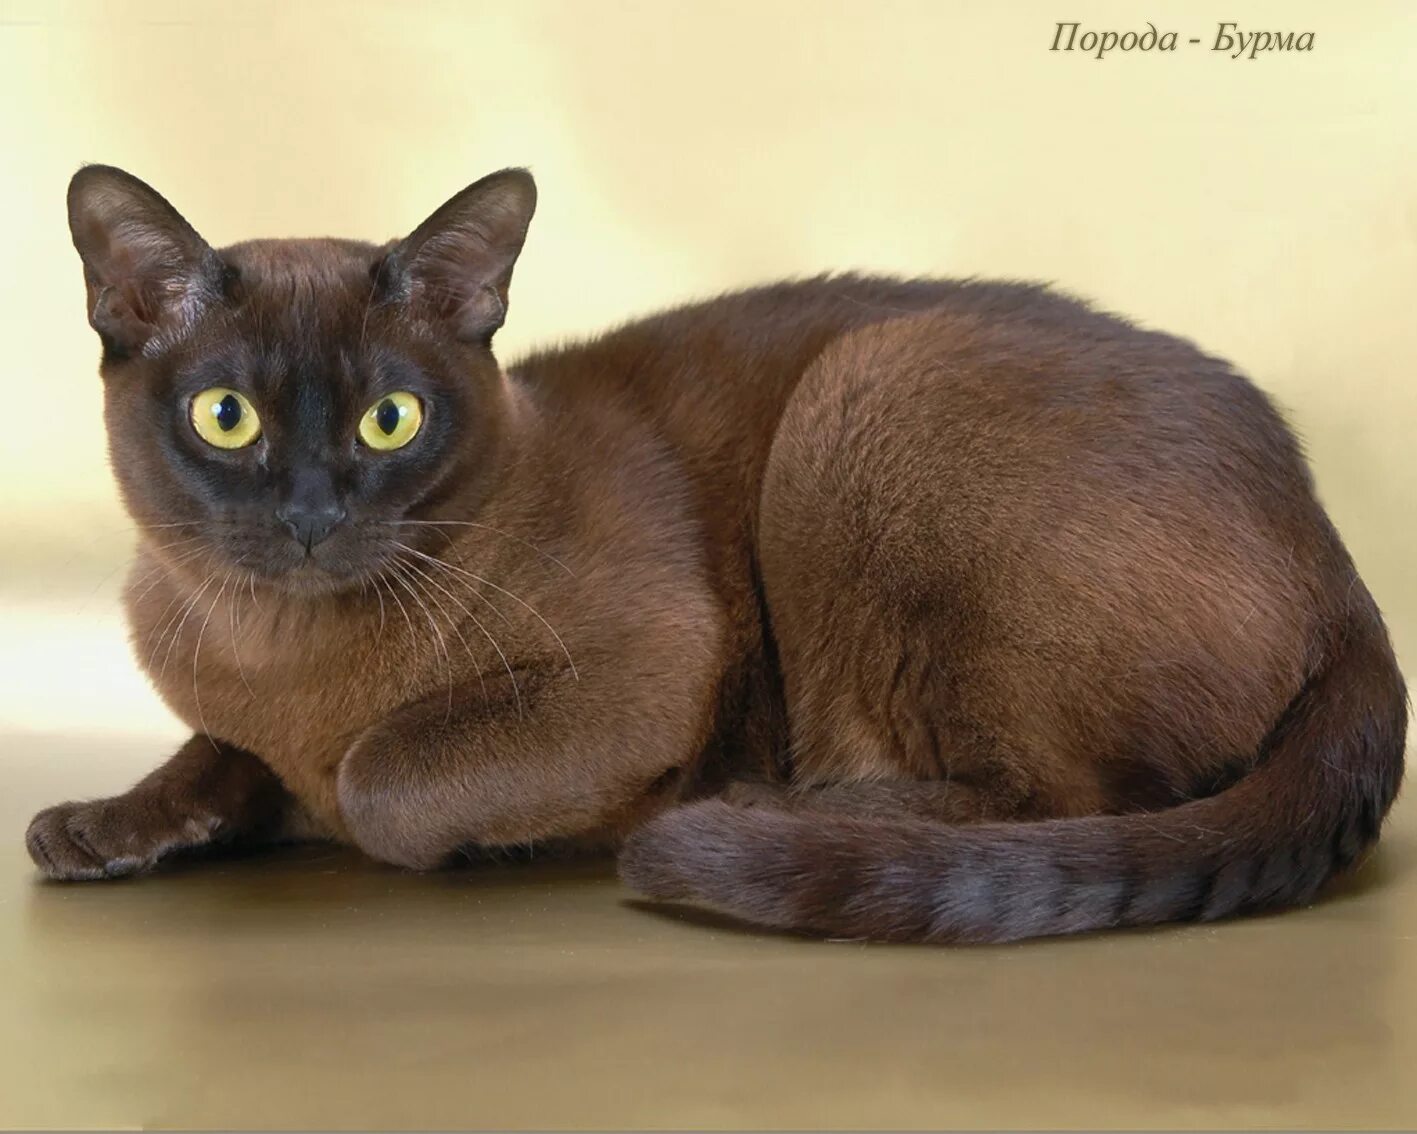 Породы кошек с фото и названиями. Европейская Бурма кошка. Бурманская Сиамская кошка. Шоколадная кошка порода Бурманская. Манчкин Бурма.